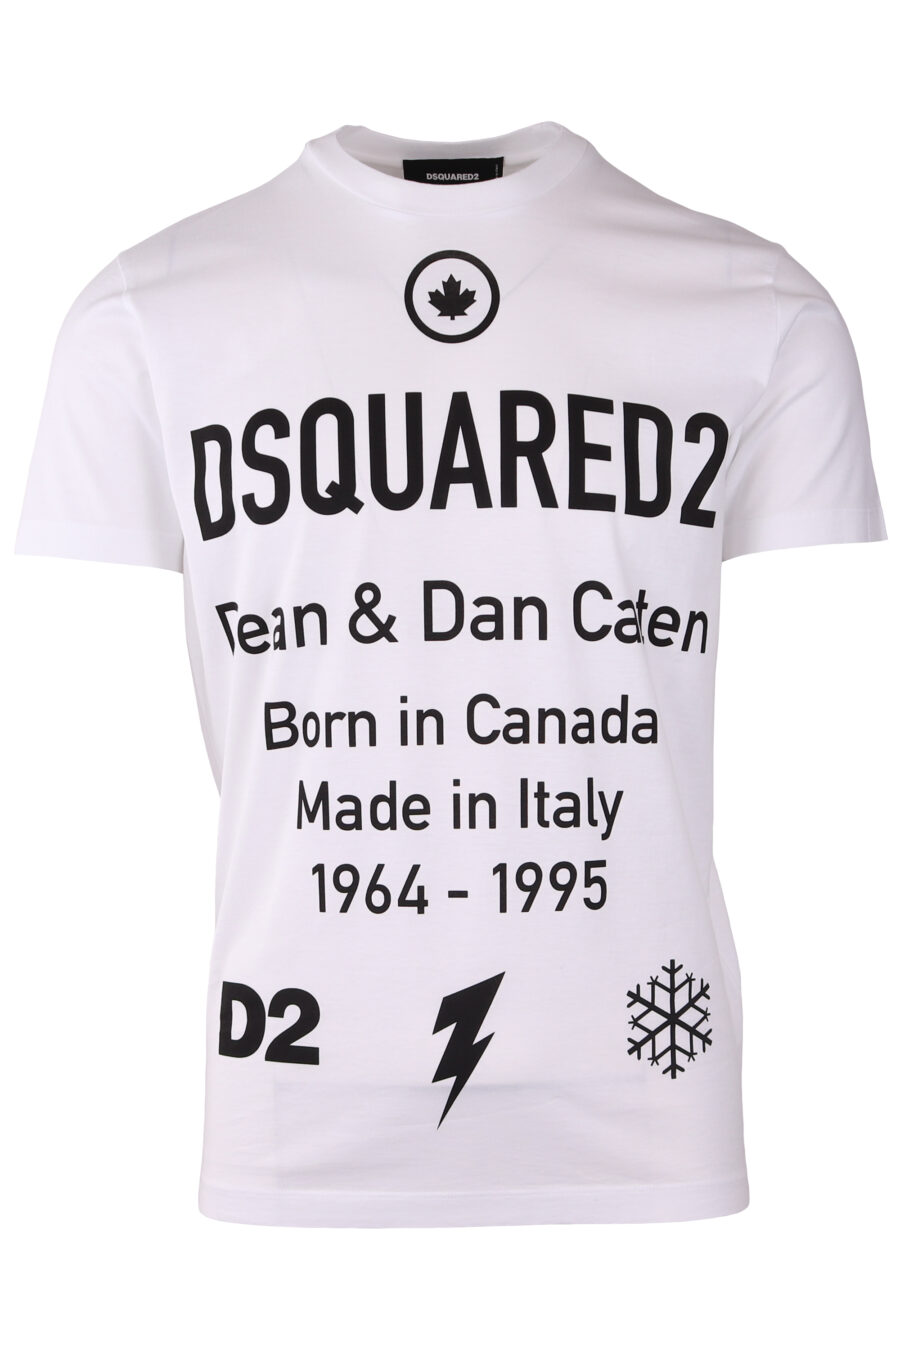 Camiseta blanca con maxilogo texto "dean and dan caten" - IMG 8979